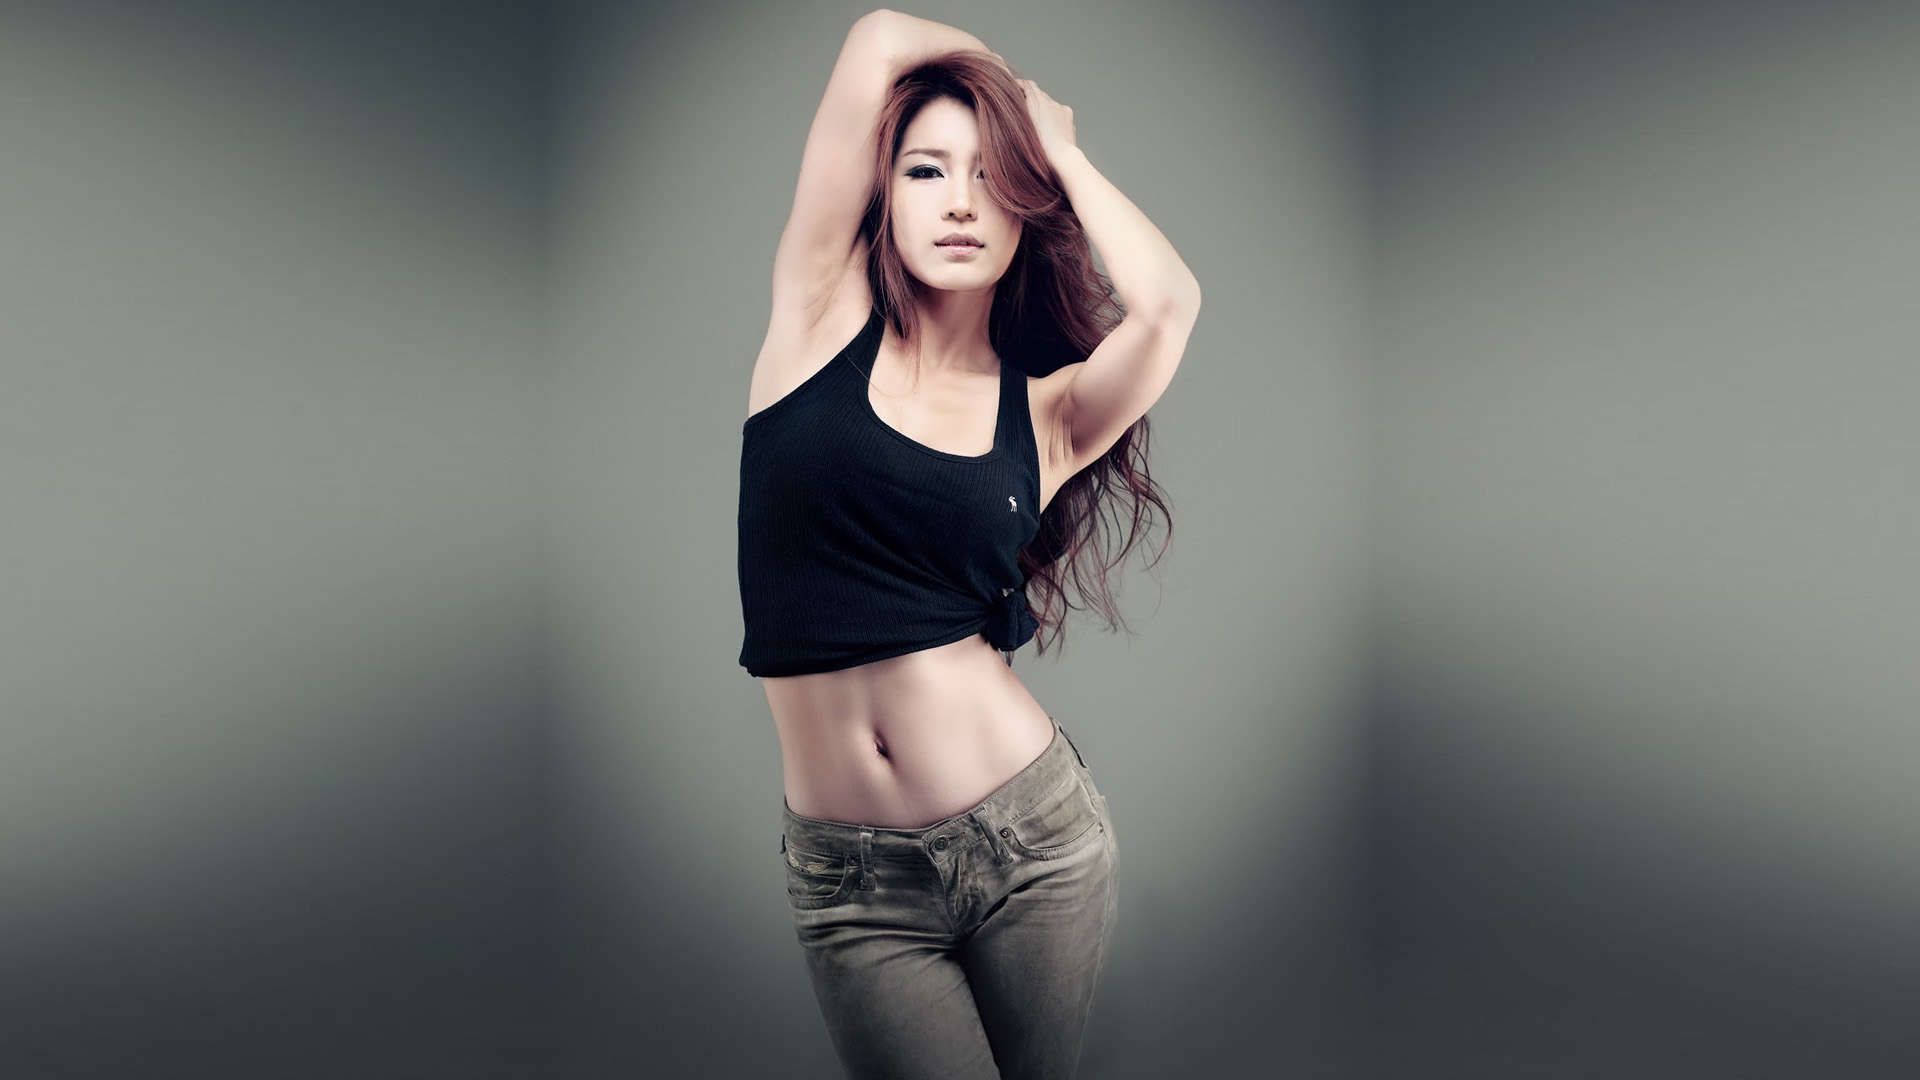 Beautiful Korean Girls HD Wallpaper 1080p. Crop top fashion, Crop tops women, Fashion